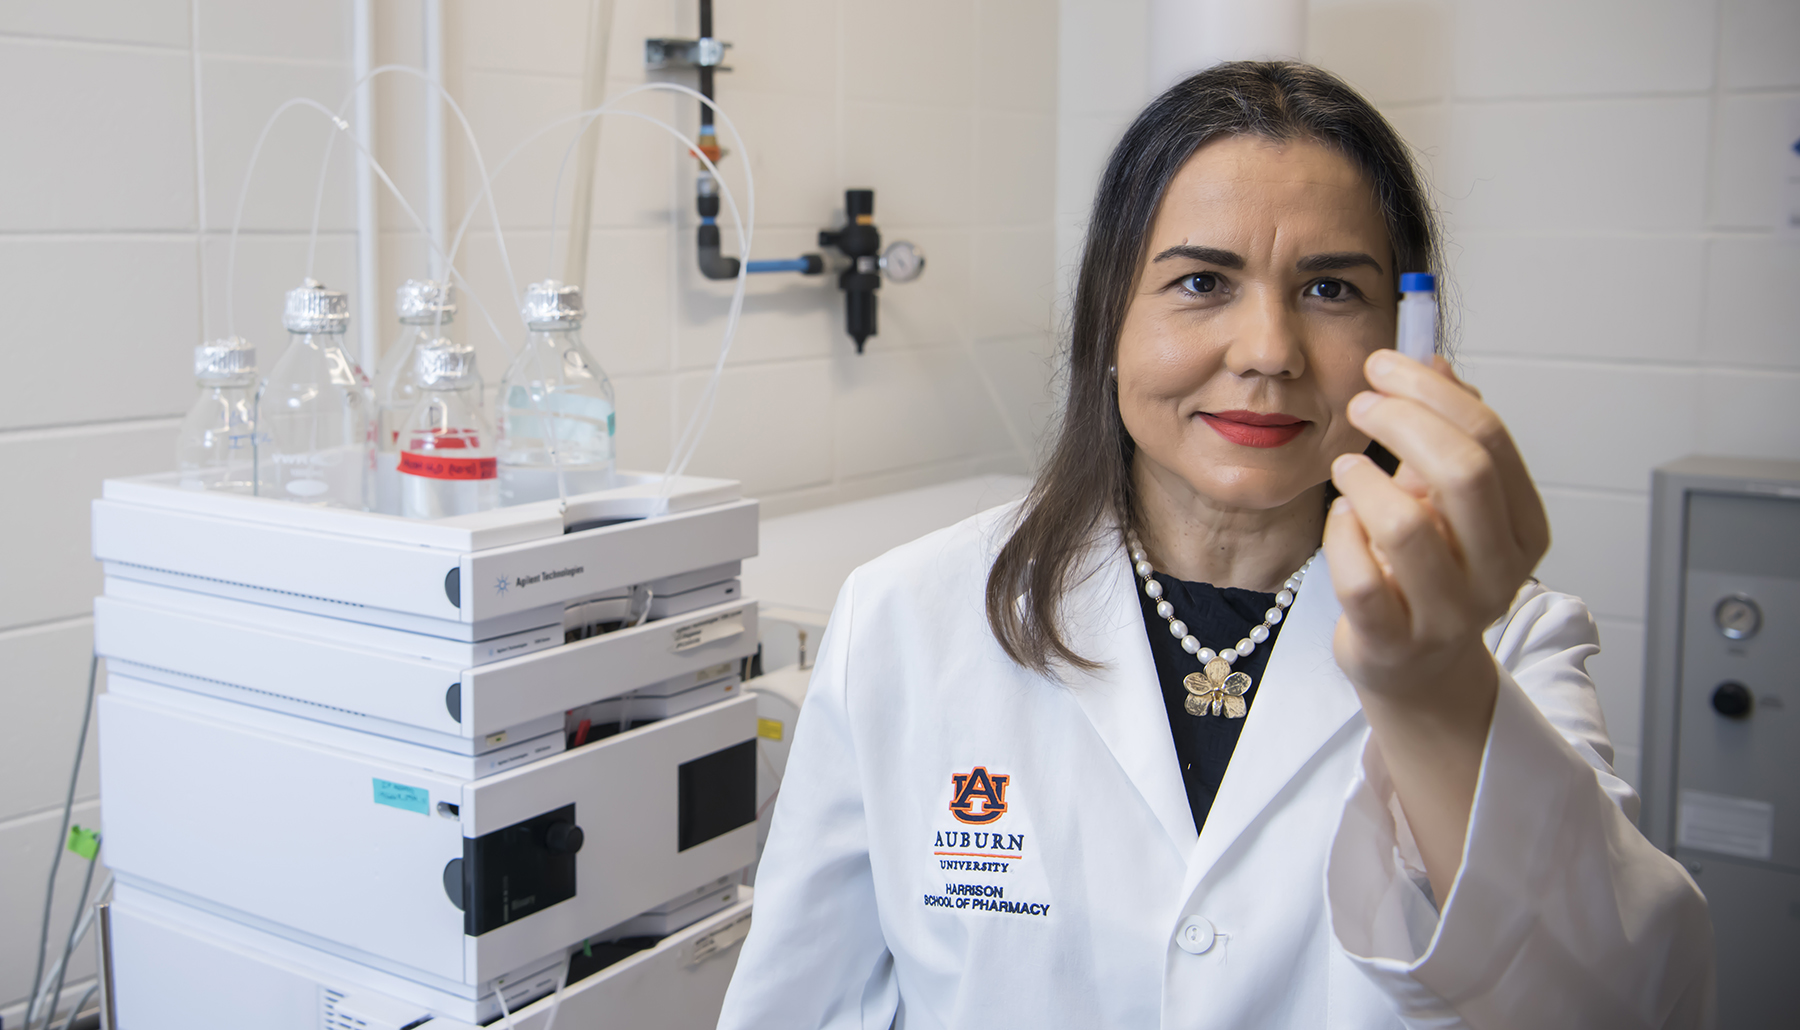 Dr. Calderon holds up a specimen in her lab